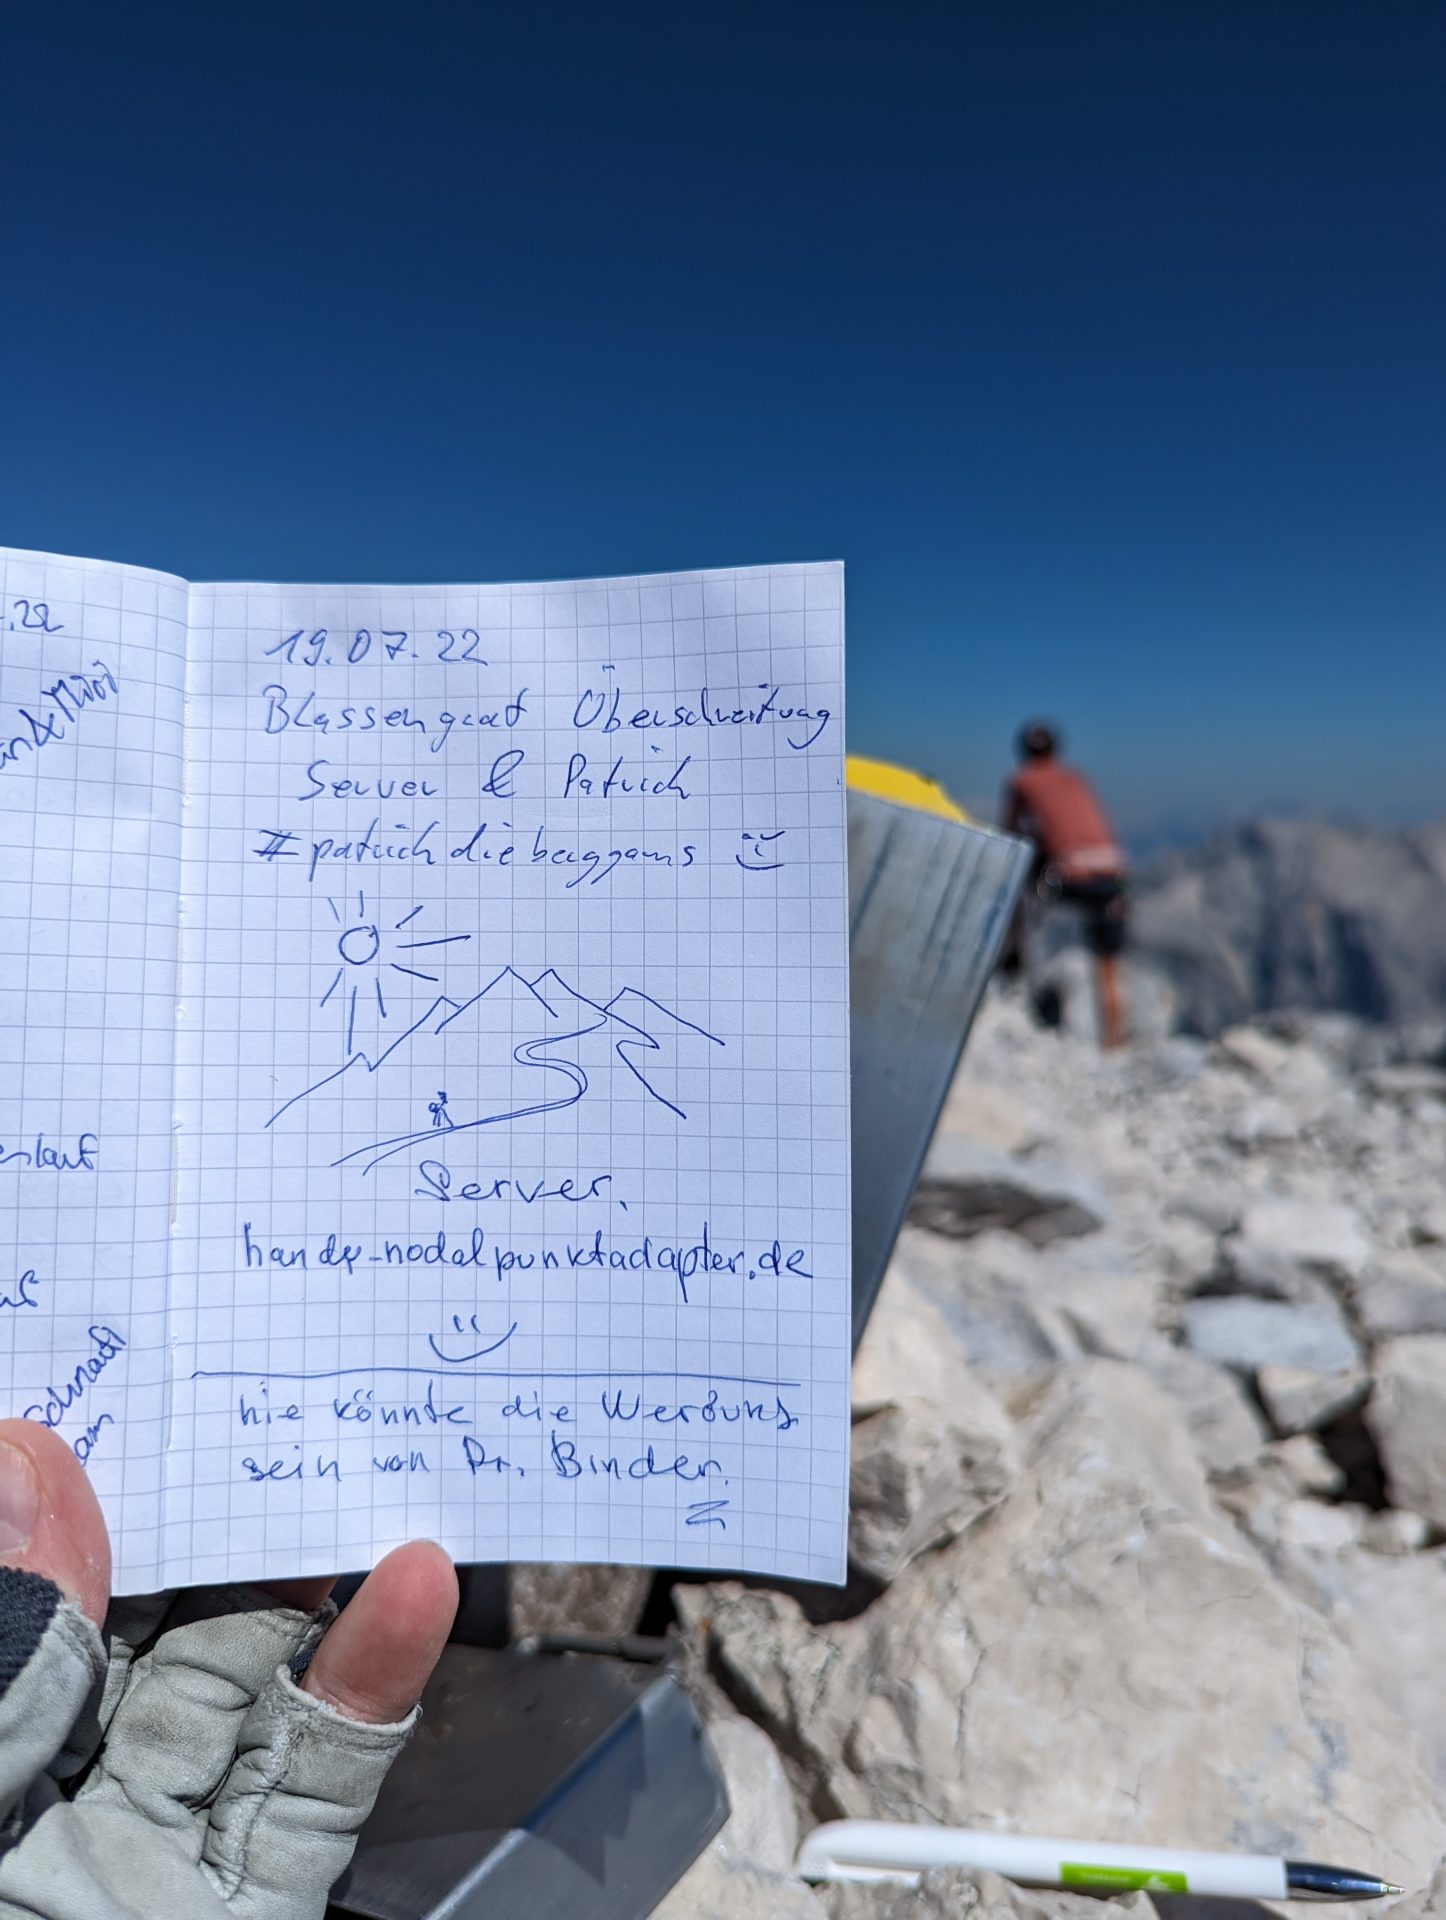 img/PXL_20220719_133722712-7.jpg - Luftige Kletterei über dem Grieskar | Wetterstein